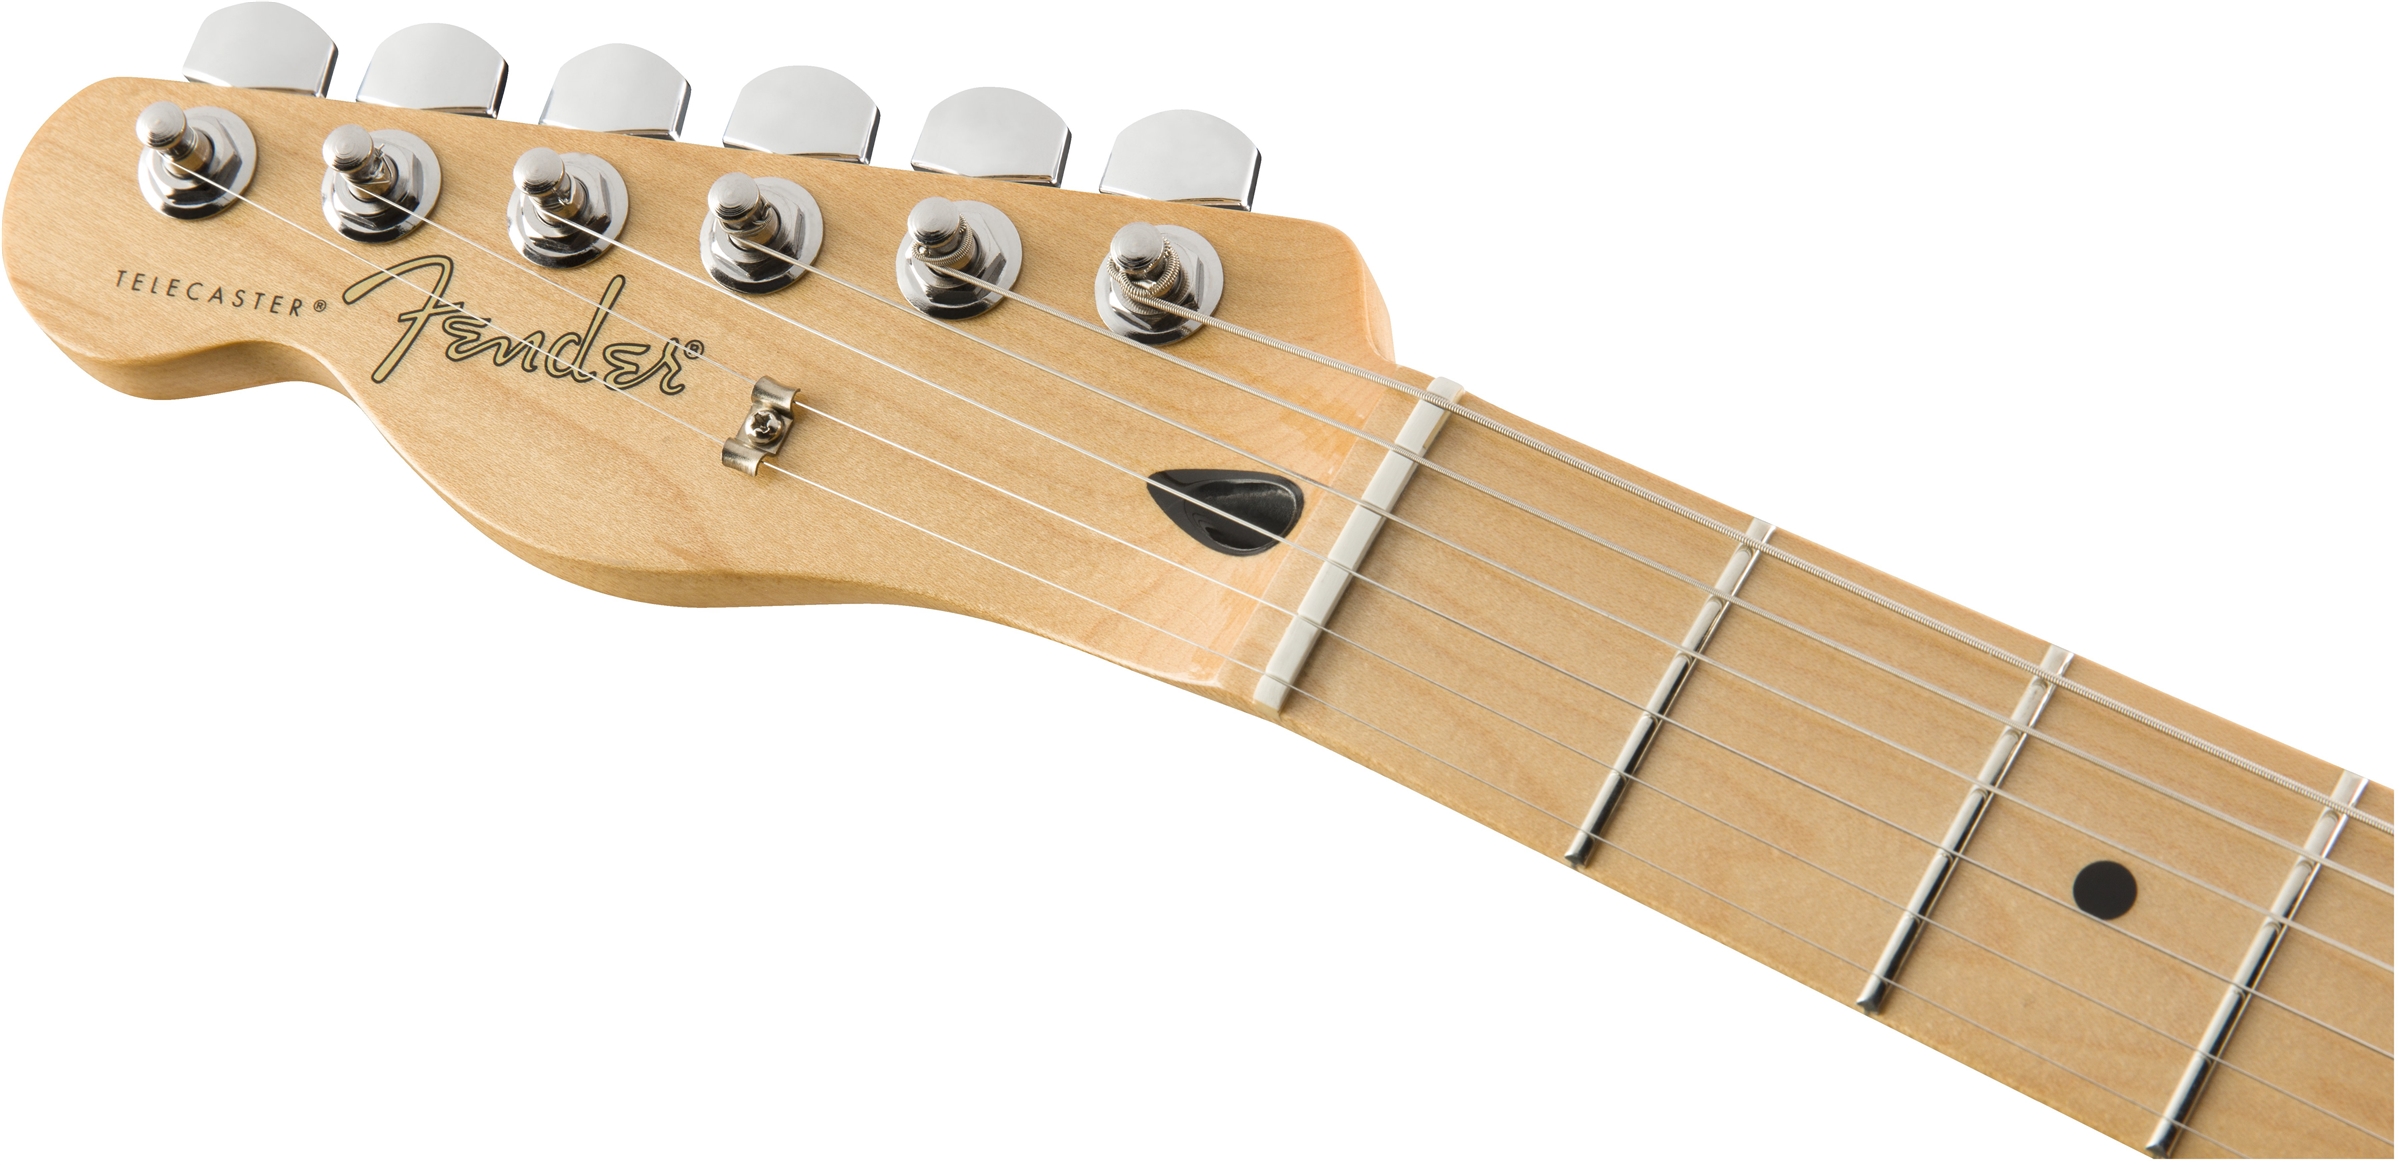 Fender Tele Player Lh Gaucher Mex 2s Mn - Butterscotch Blonde - Linkshandige elektrische gitaar - Variation 4